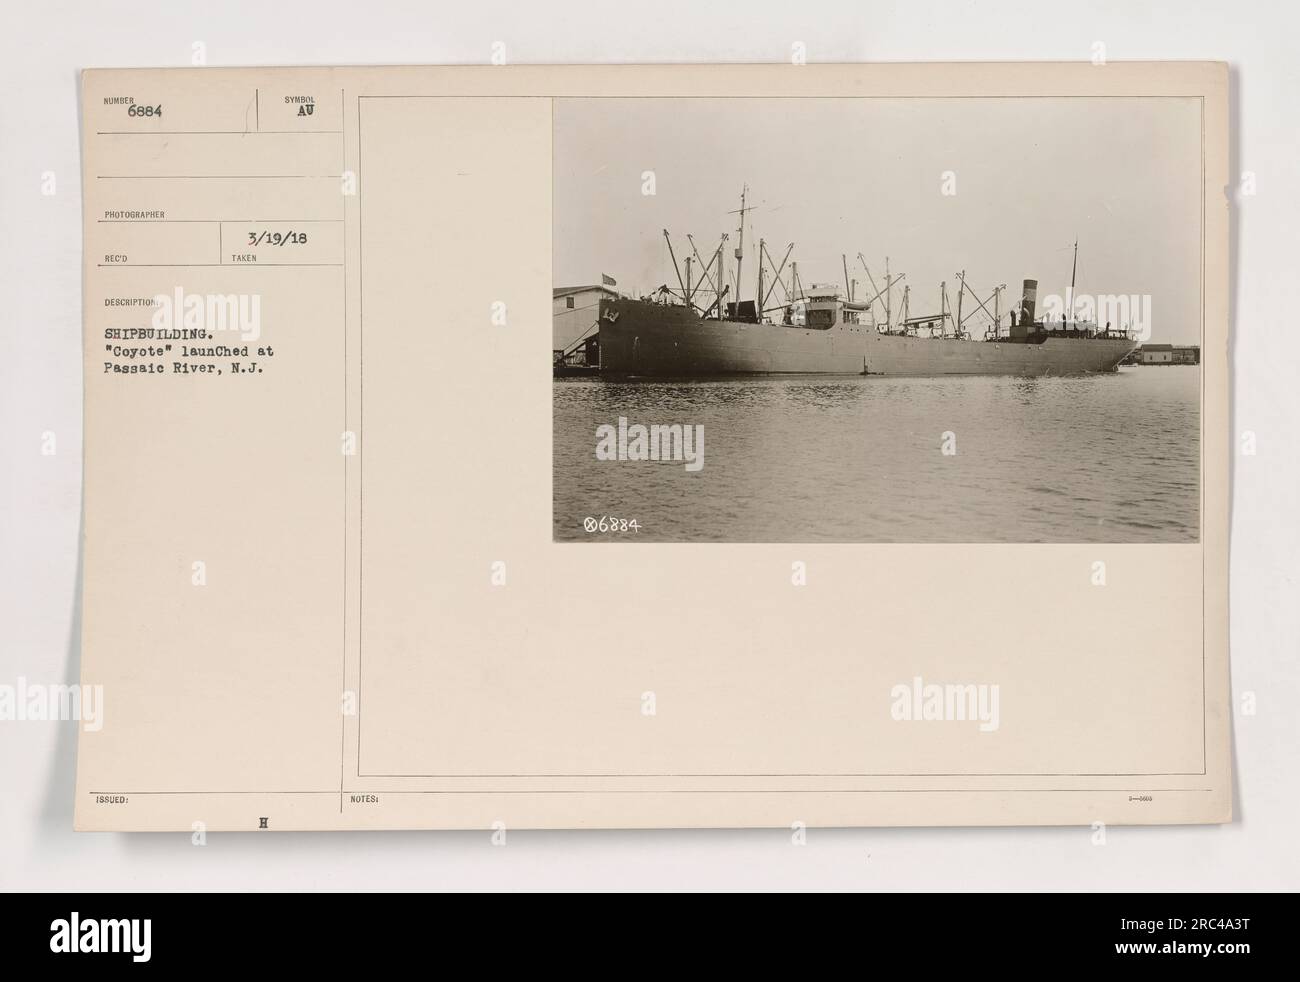 Das Foto zeigt den Schiffbau des „Coyote“ am Passaic River in New Jersey. Das Schiff namens "Coyote" wird am 19. März 1918 gestartet. Das Foto wurde von einem unbekannten Fotografen aufgenommen. Stockfoto